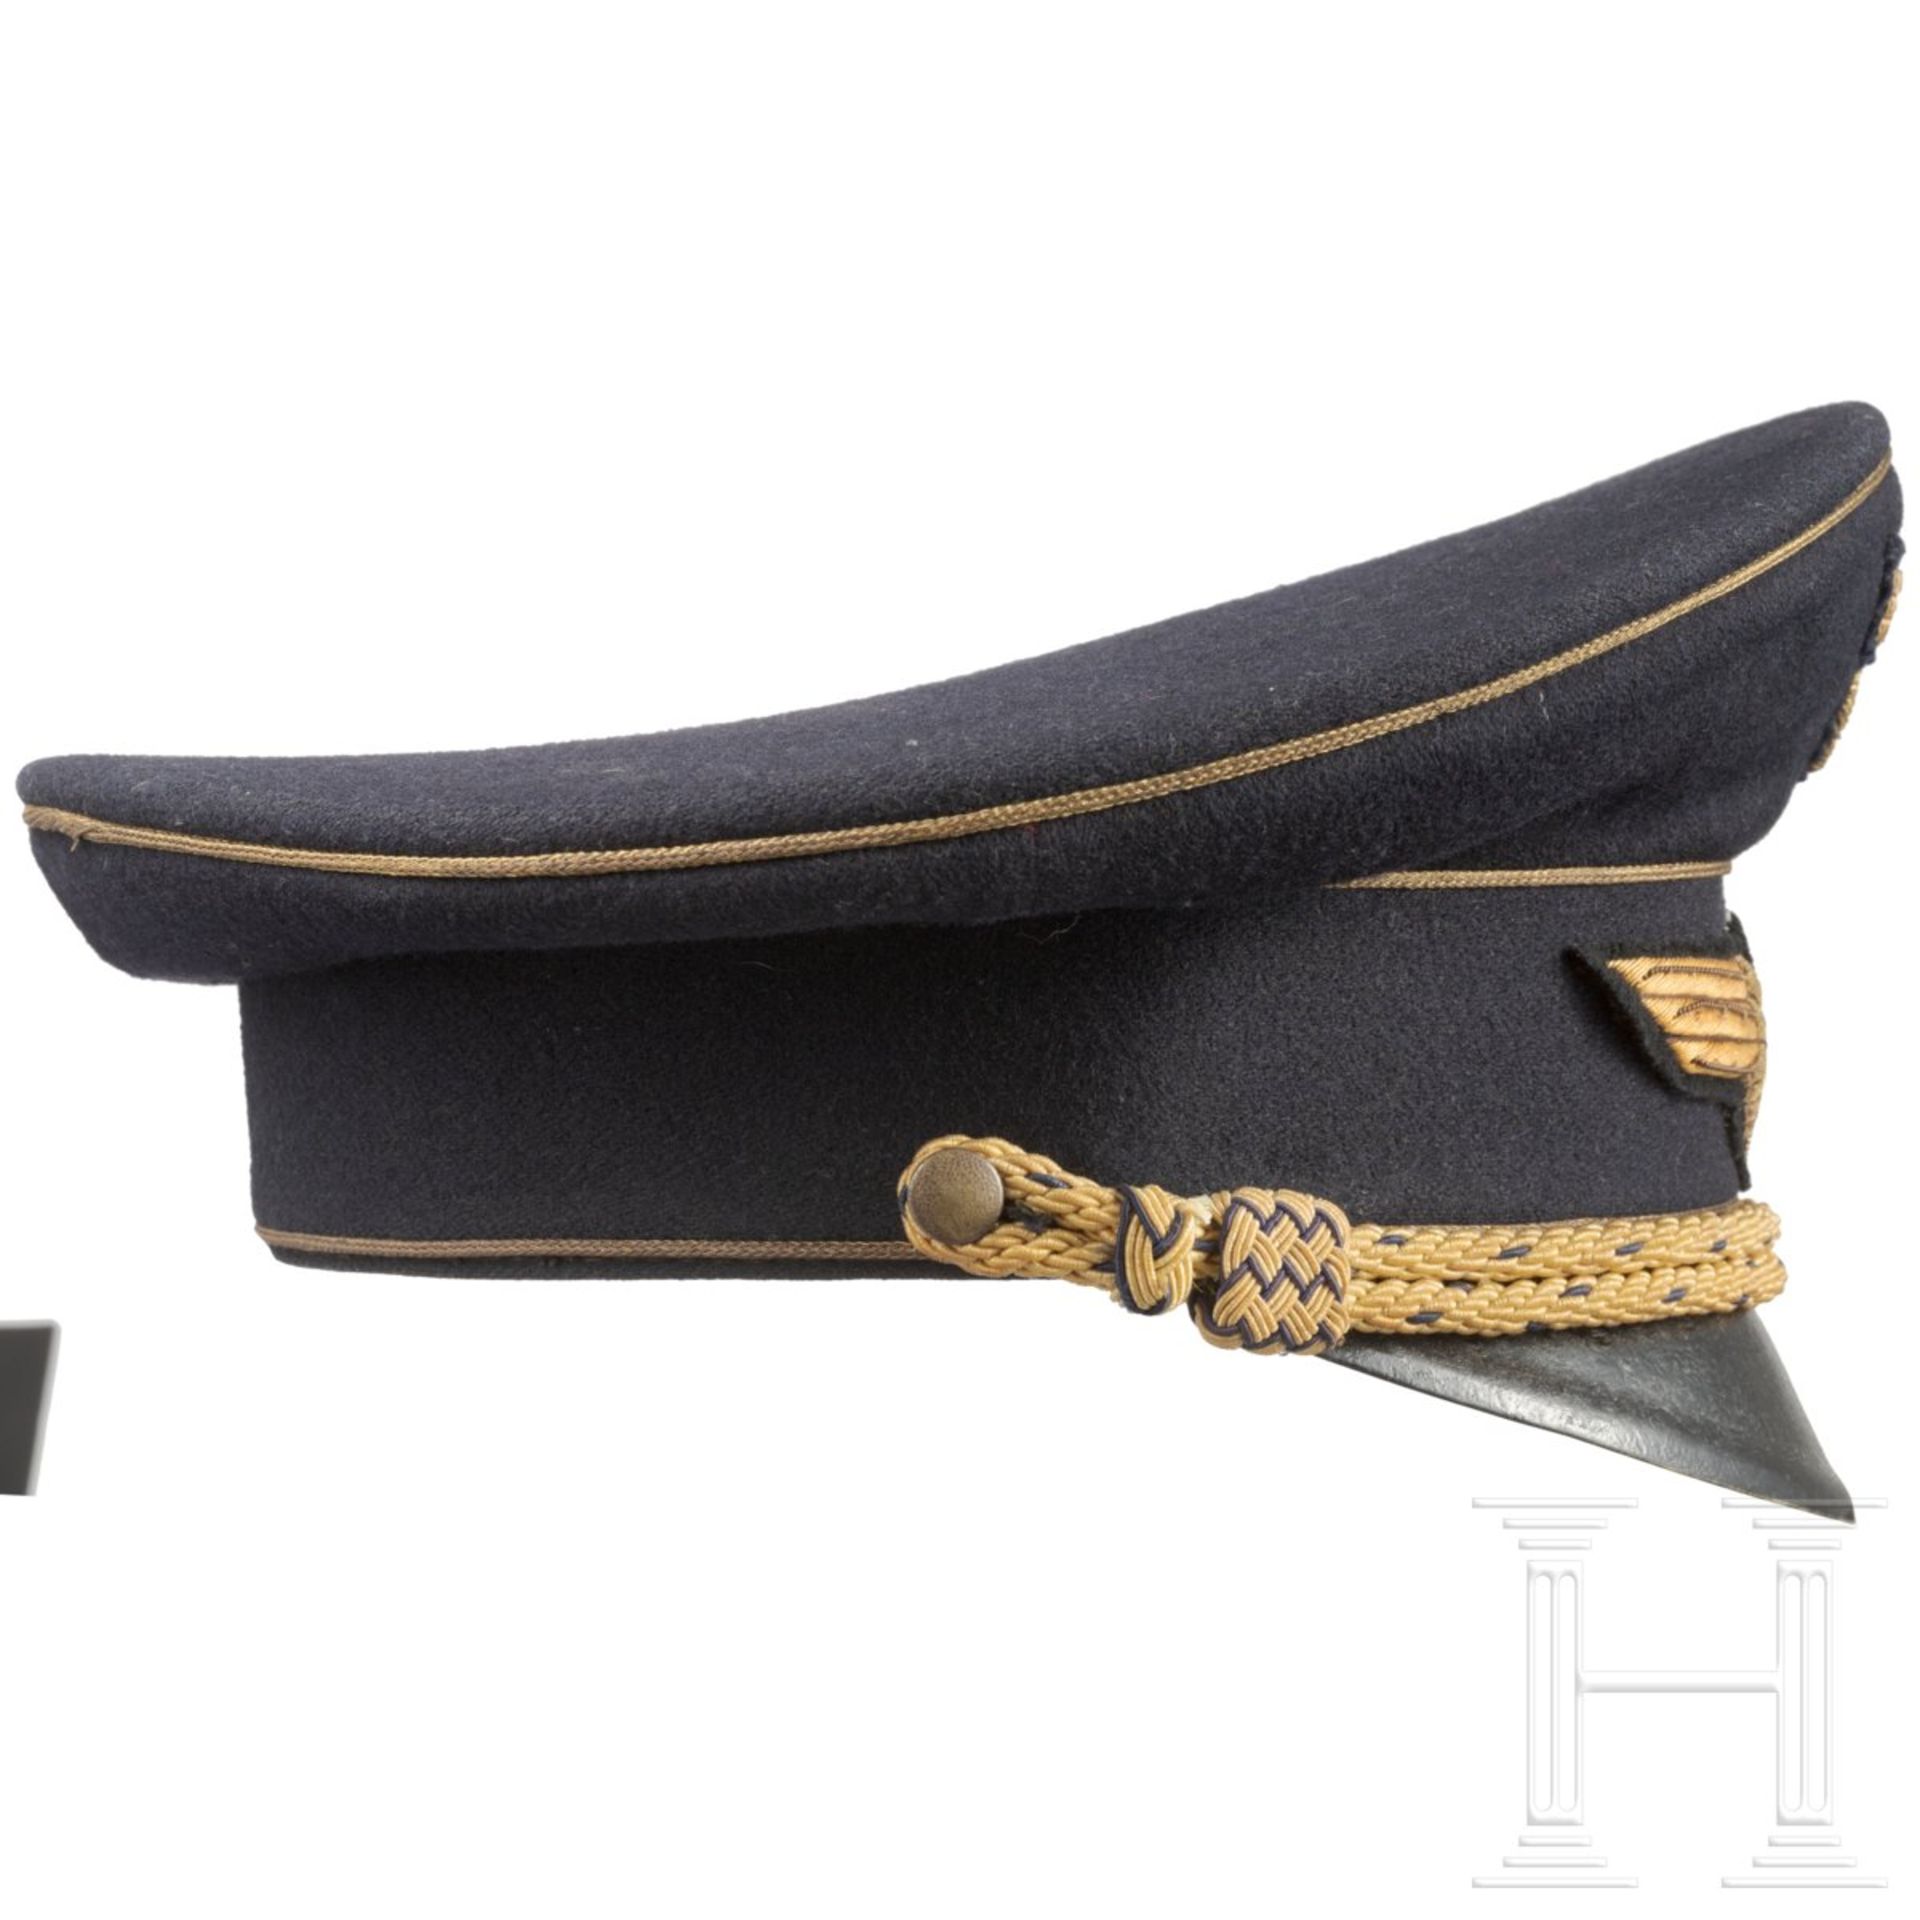 <de>Schirmmütze für einen Reichsbahndirektor<br>Späte Fertigung aus dunkelblauem Wollstoff mit schwa - Bild 3 aus 11